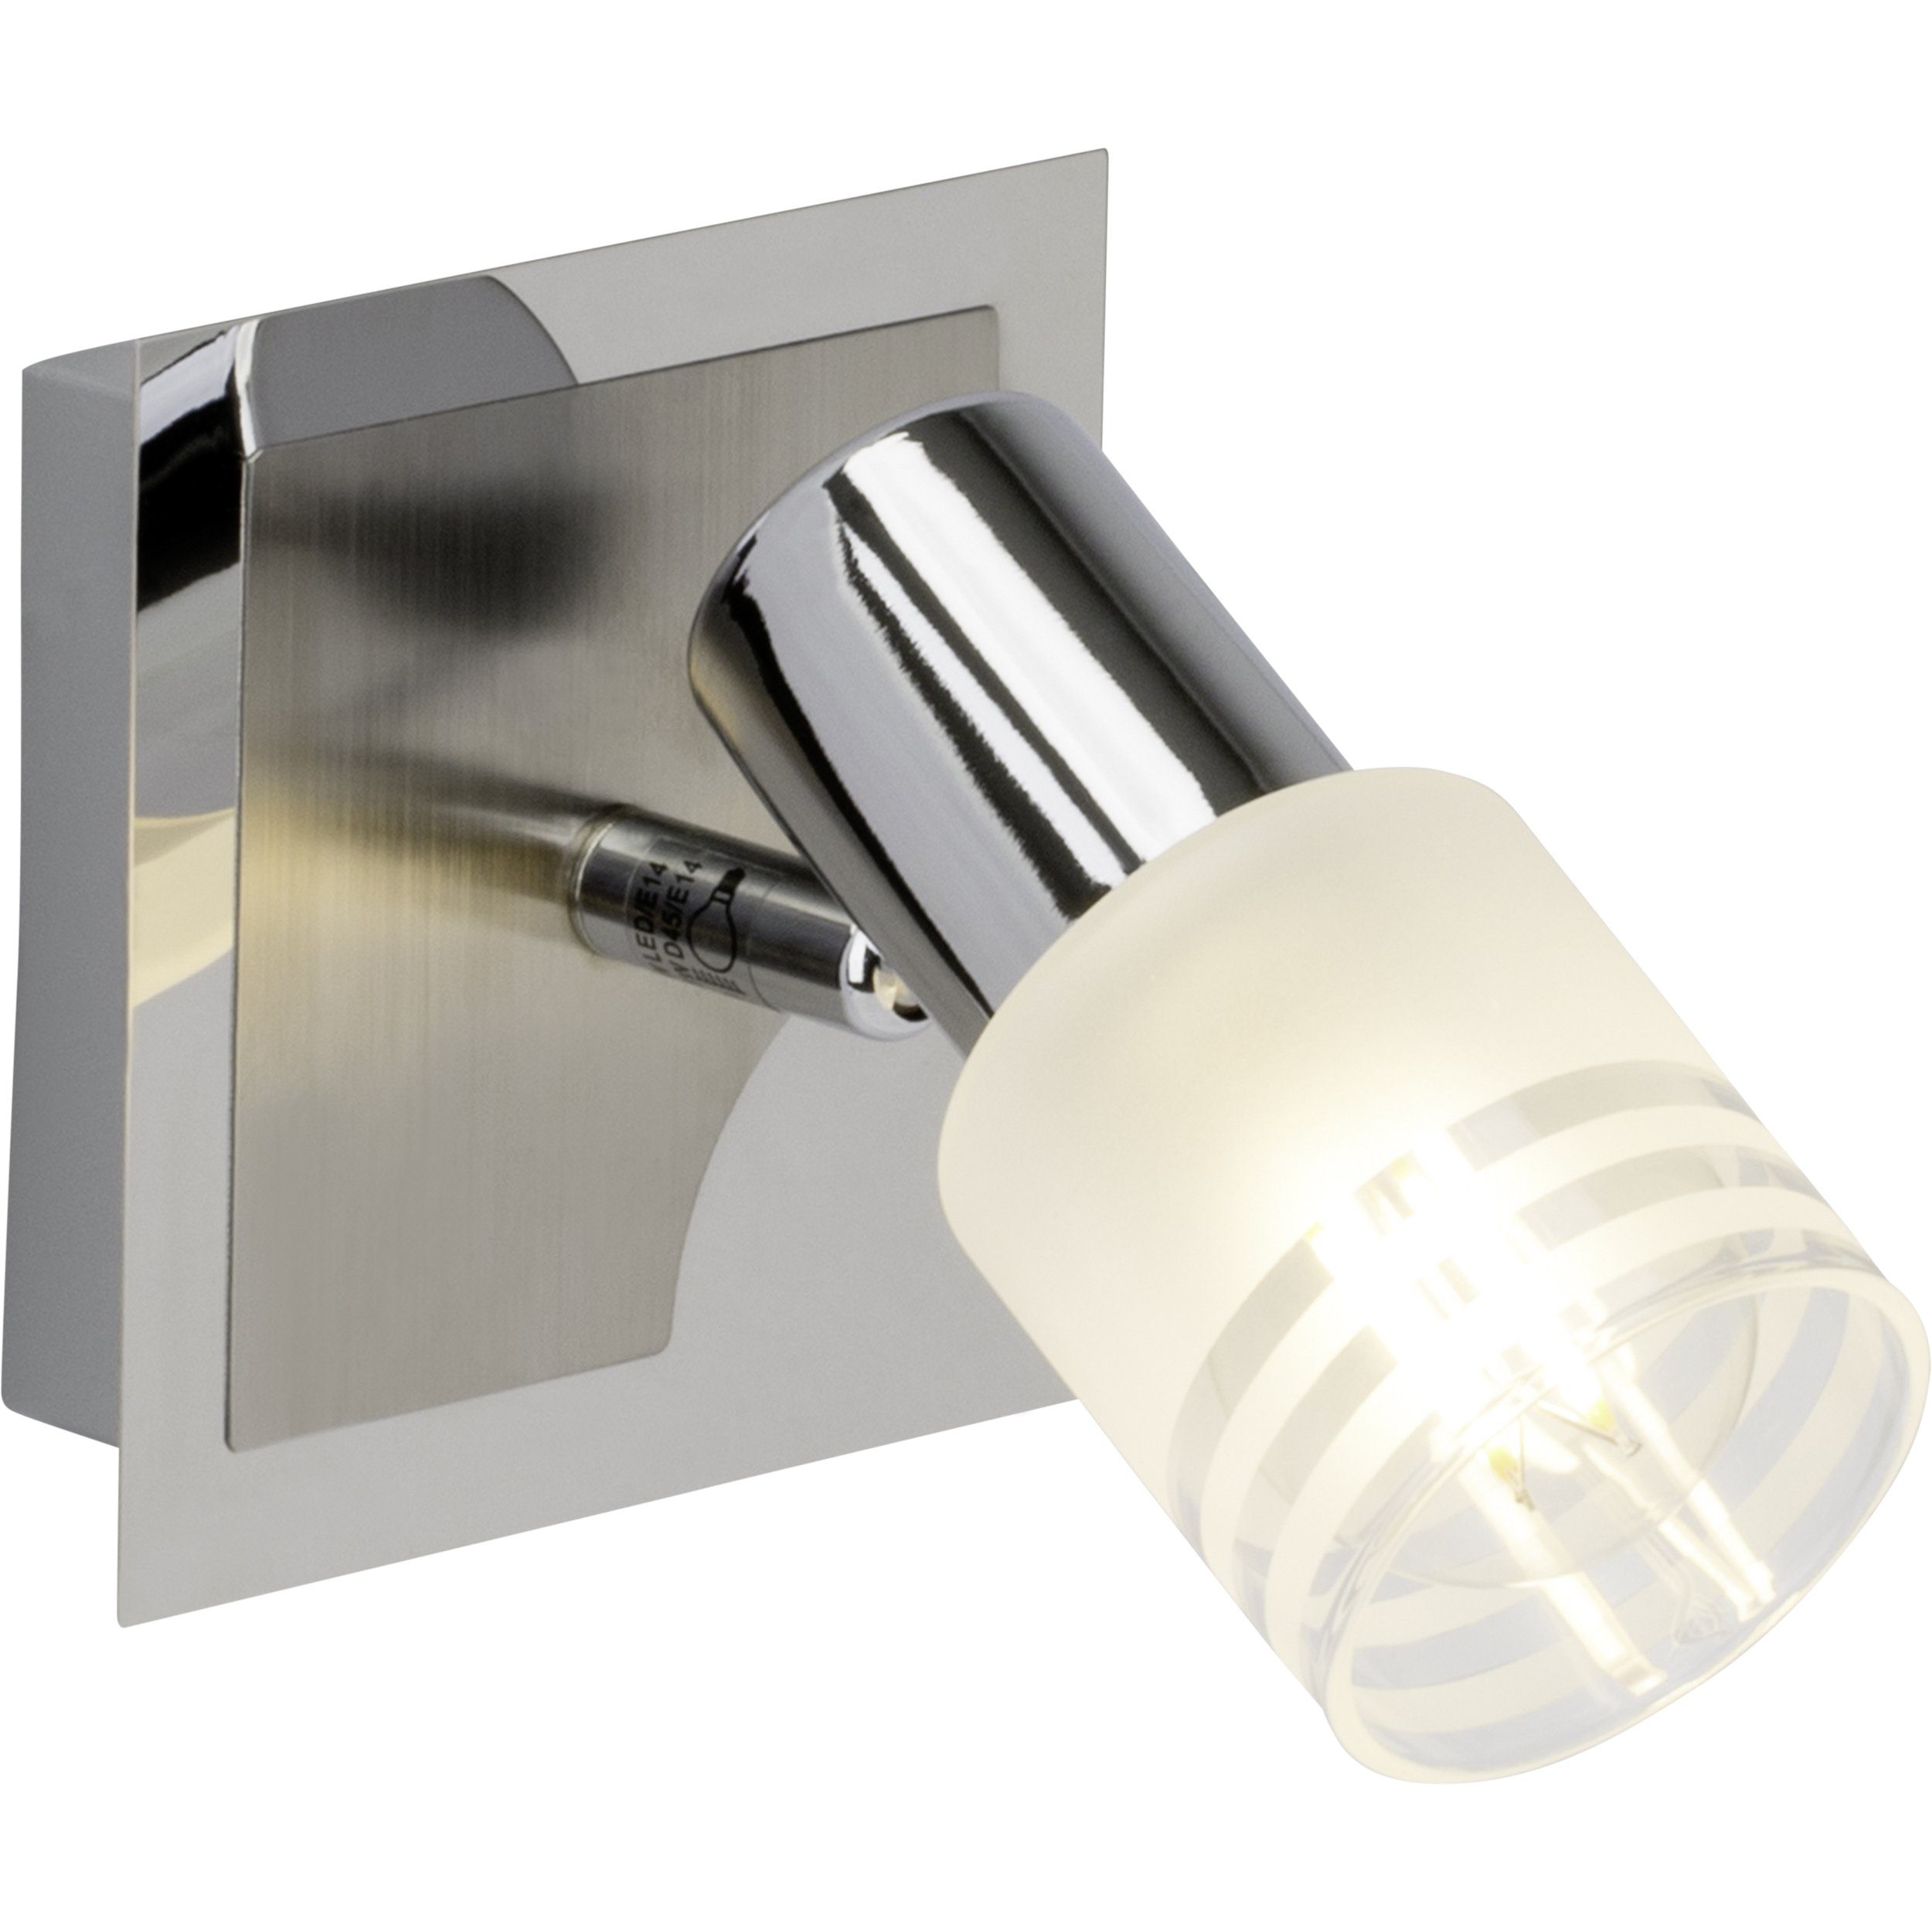 Lightbox Deckenleuchte, LED wechselbar, warmweiß, Wandspot, schwenkbar, 15 x 11 x 15 cm, E14, 400 lm, 2700 K, inkl. LED